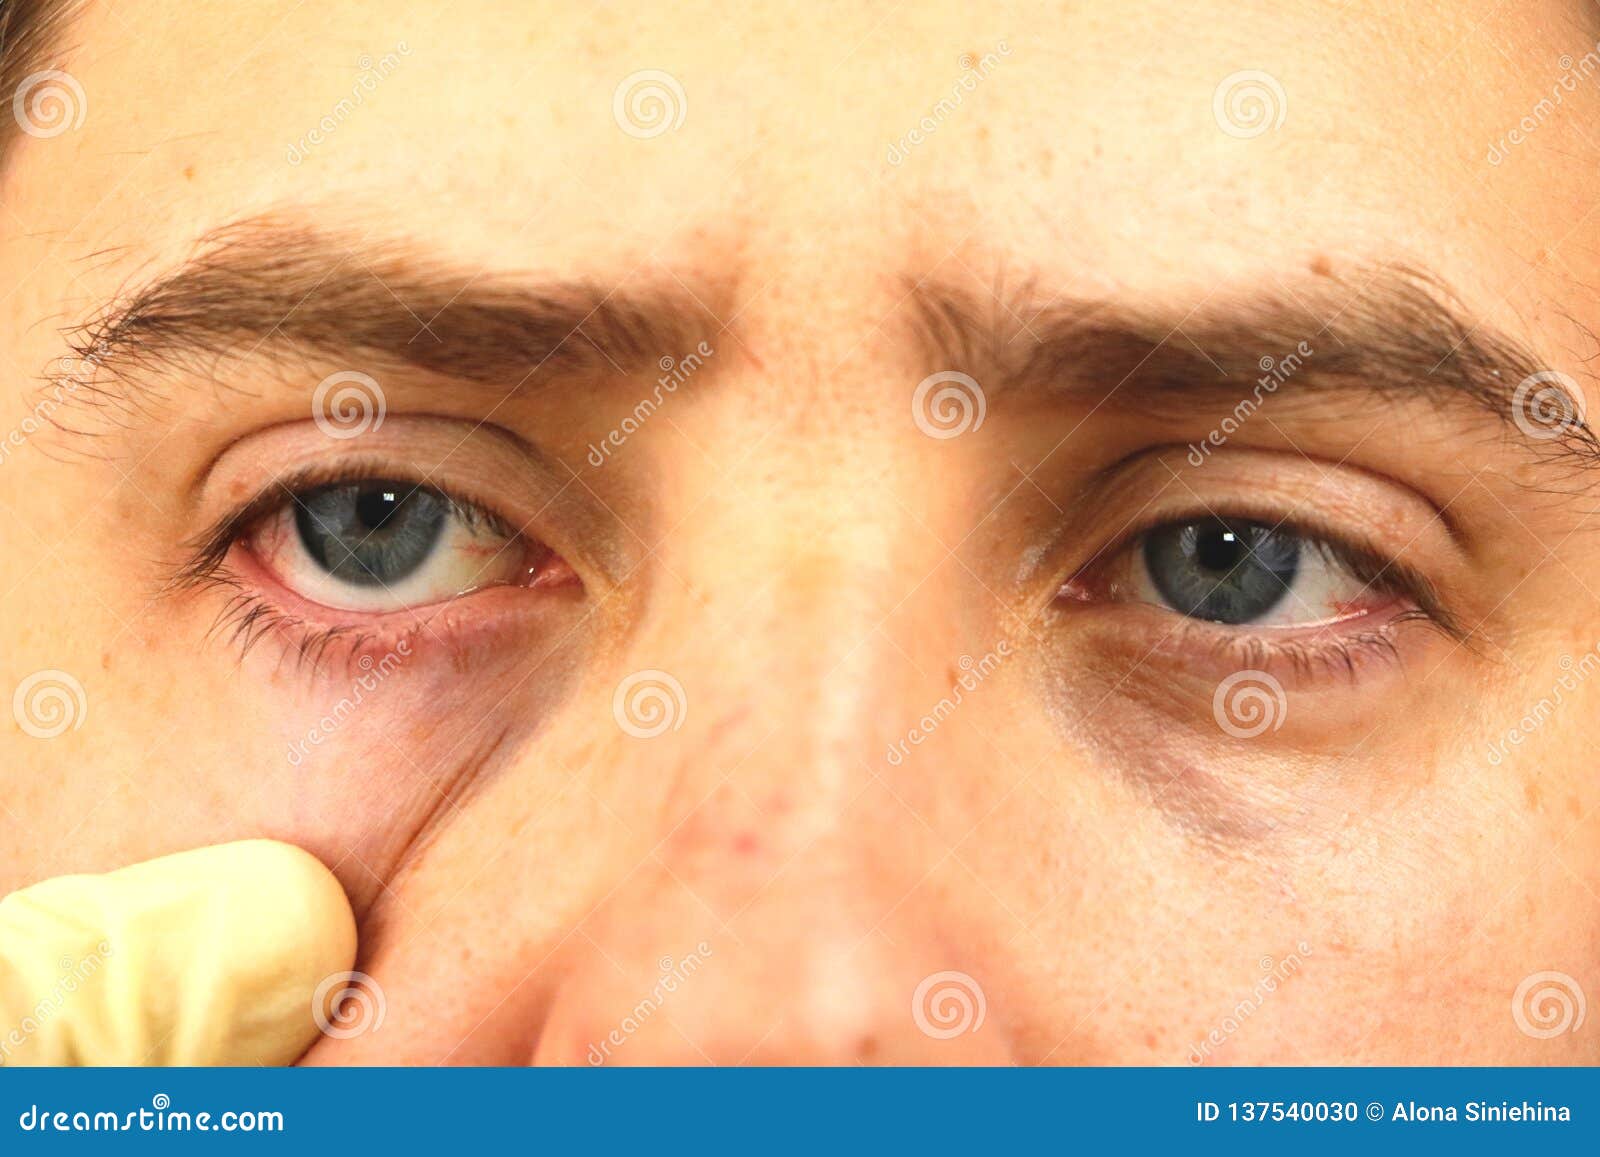 Как убрать красные глаза в Snapseed